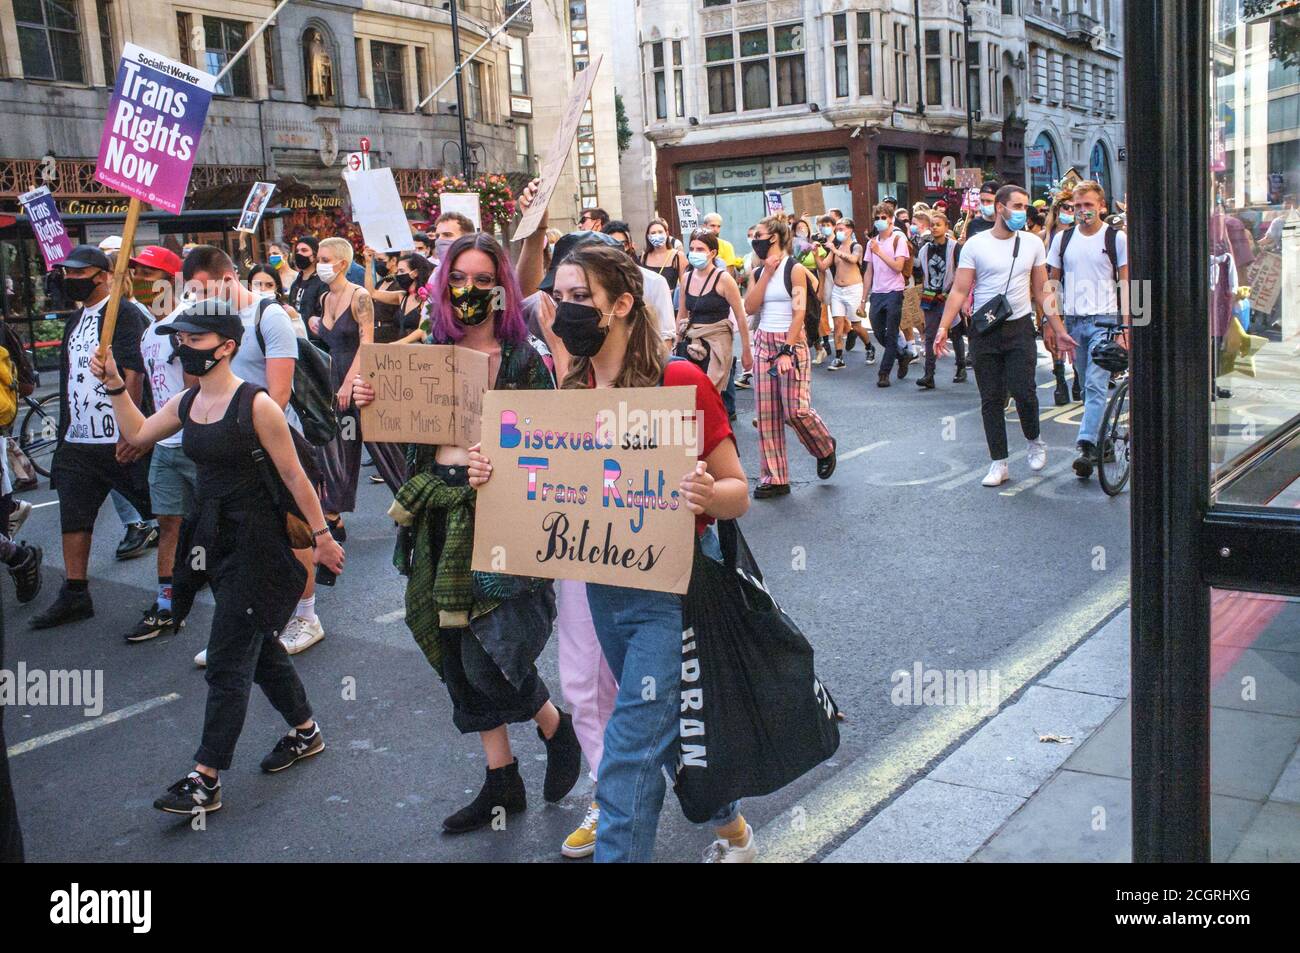 12. September, London, Großbritannien. Trans People marschieren durch London für eine progressive Reform des Gender Recognition Act (das Gesetz, das regelt, wie Erwachsene Trans-Männer und Frauen rechtliche Anerkennung ihres Geschlechts erlangen) und gegen transphobische Rhetorik. Sie setzen sich dafür ein, dass ihre Rechte im Gleichstellungsgesetz garantiert werden, und stehen gegen politische Eingriffe in die Gesundheitsversorgung junger Transmenschen. Die Organisatoren sind besorgt über den jüngsten Anstieg der Gewalt gegenüber der Trans+-Gemeinschaft. Dies ist erst der zweite märz, den die Gruppe in London abgehalten hat. Bridget Catterall/Alamy Live News Stockfoto